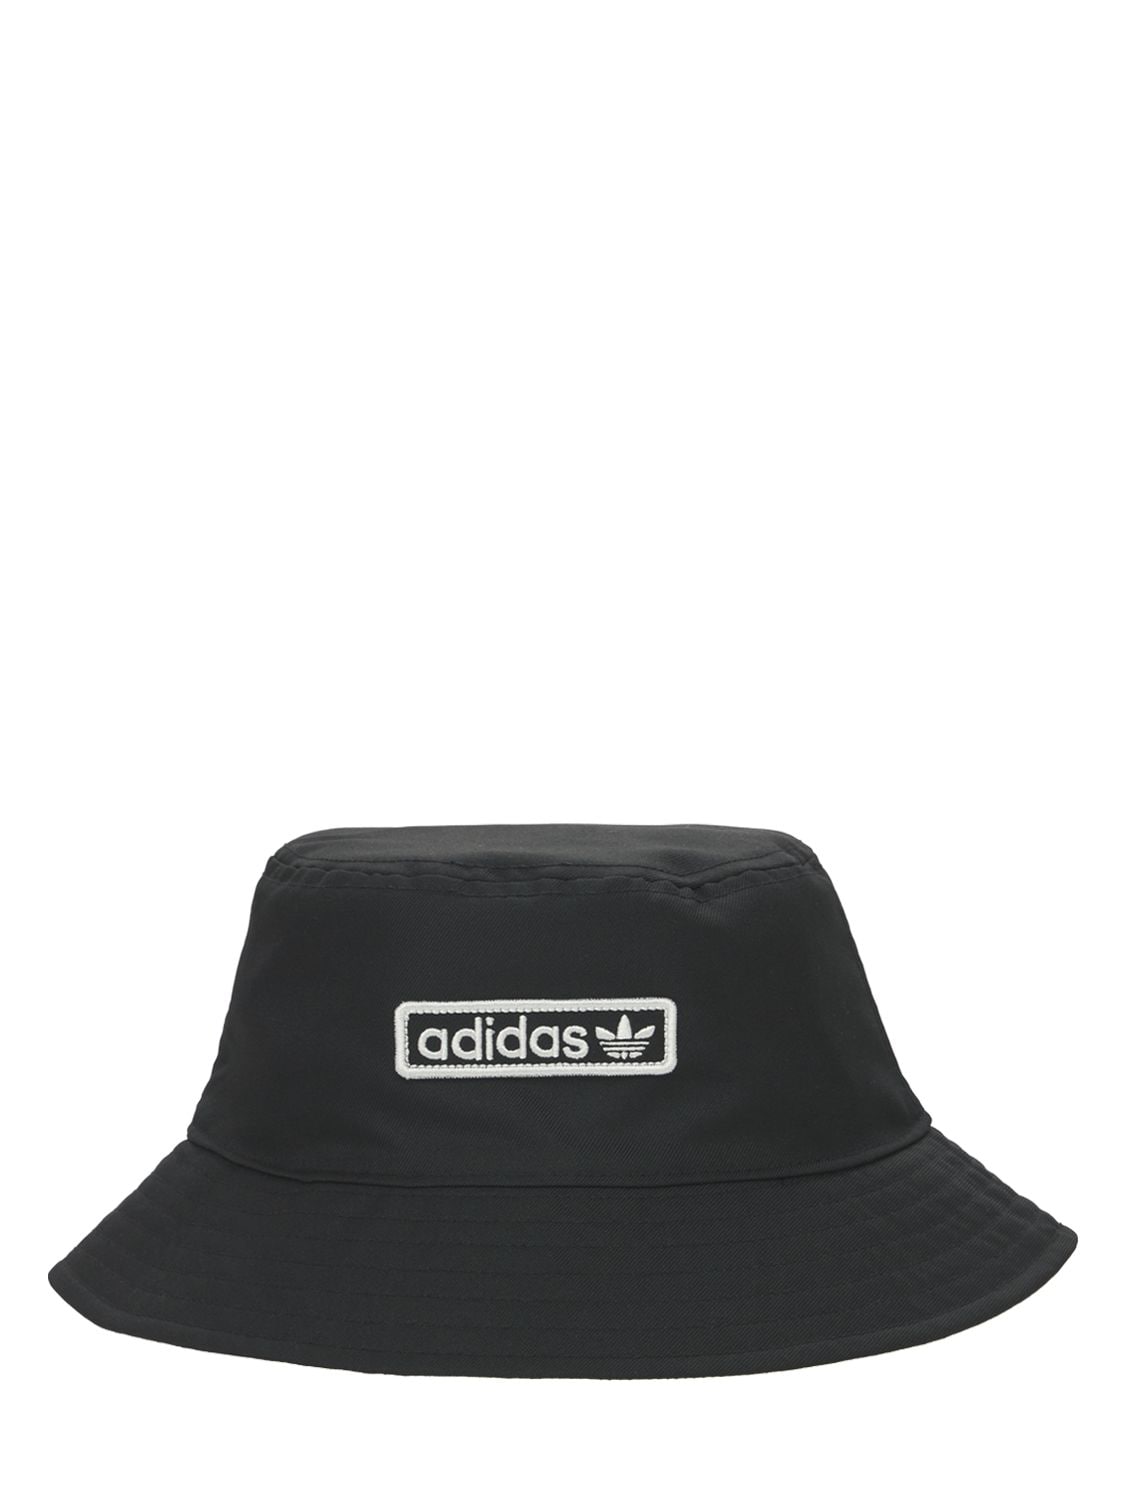 Adidas Originals Bucket Hat In Black,white